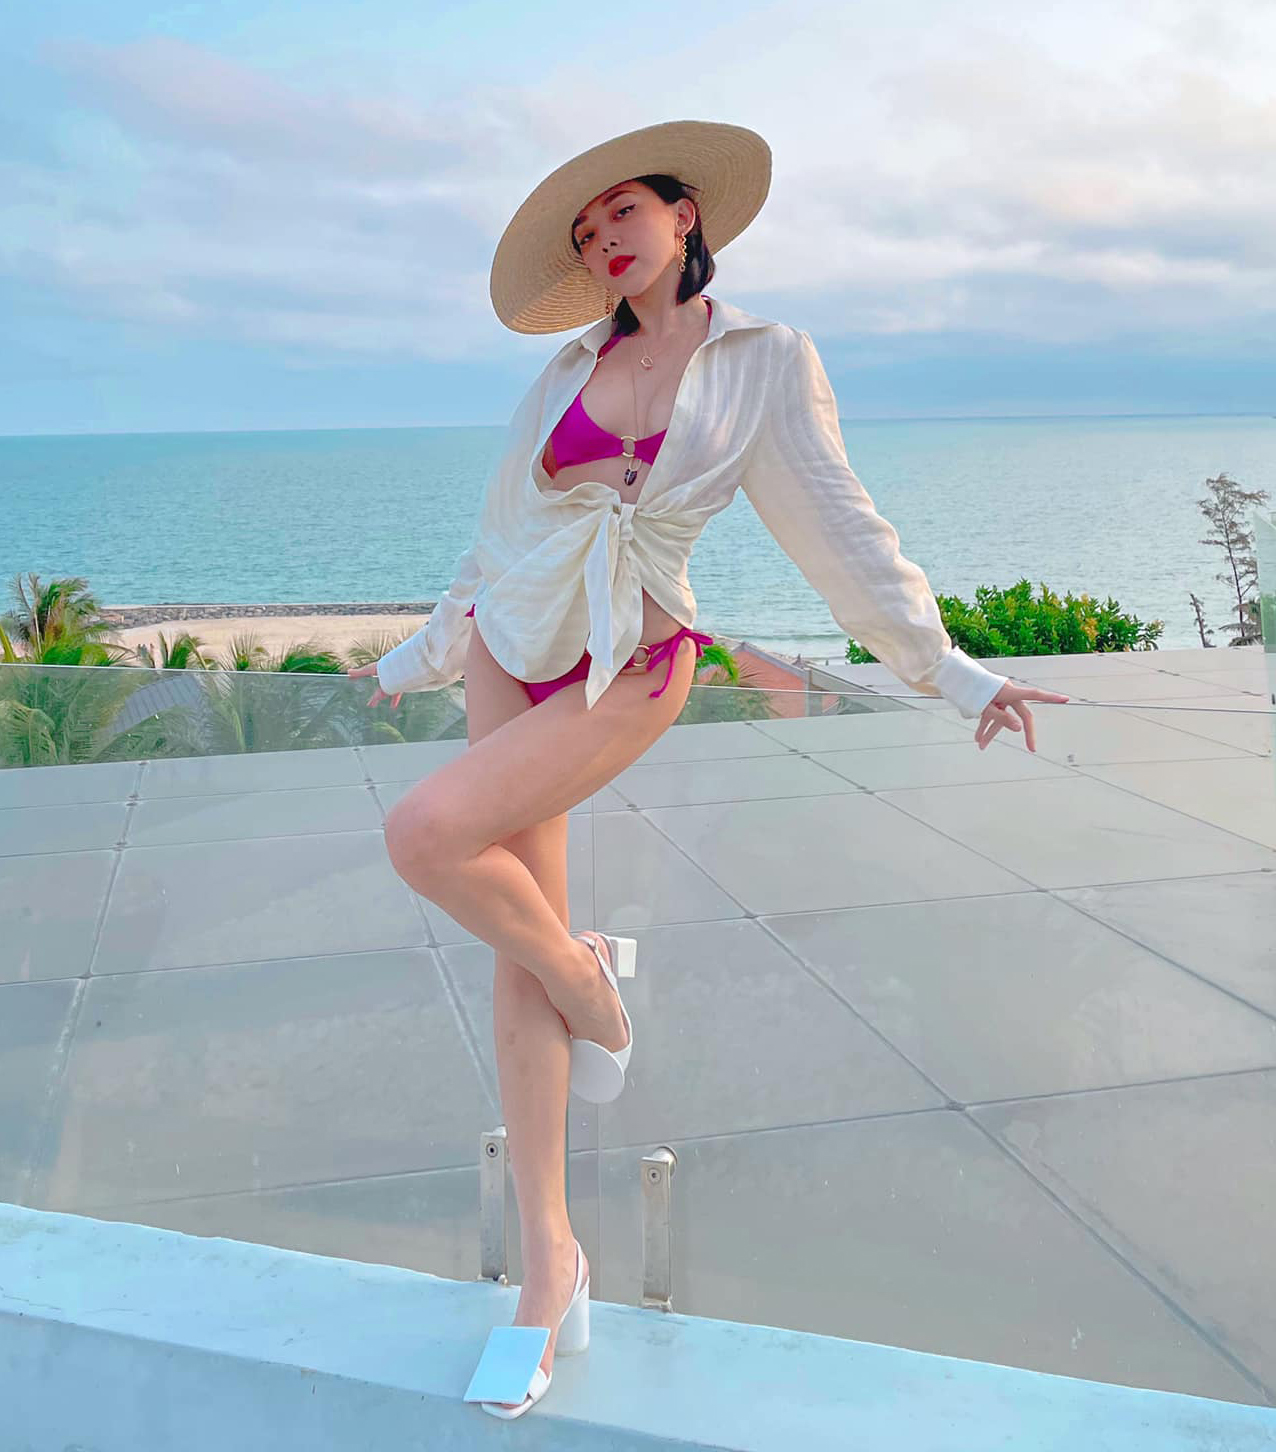 Tóc Tiên đang có chuyến nghỉ dưỡng đầu năm ở biển. Trong khu resort, nữ ca sĩ diện bộ bikini màu hồng tím rất tôn da, kết hợp cùng sơ mi khoác hờ hững phía ngoài và mũ cói theo phong cách cổ điển.